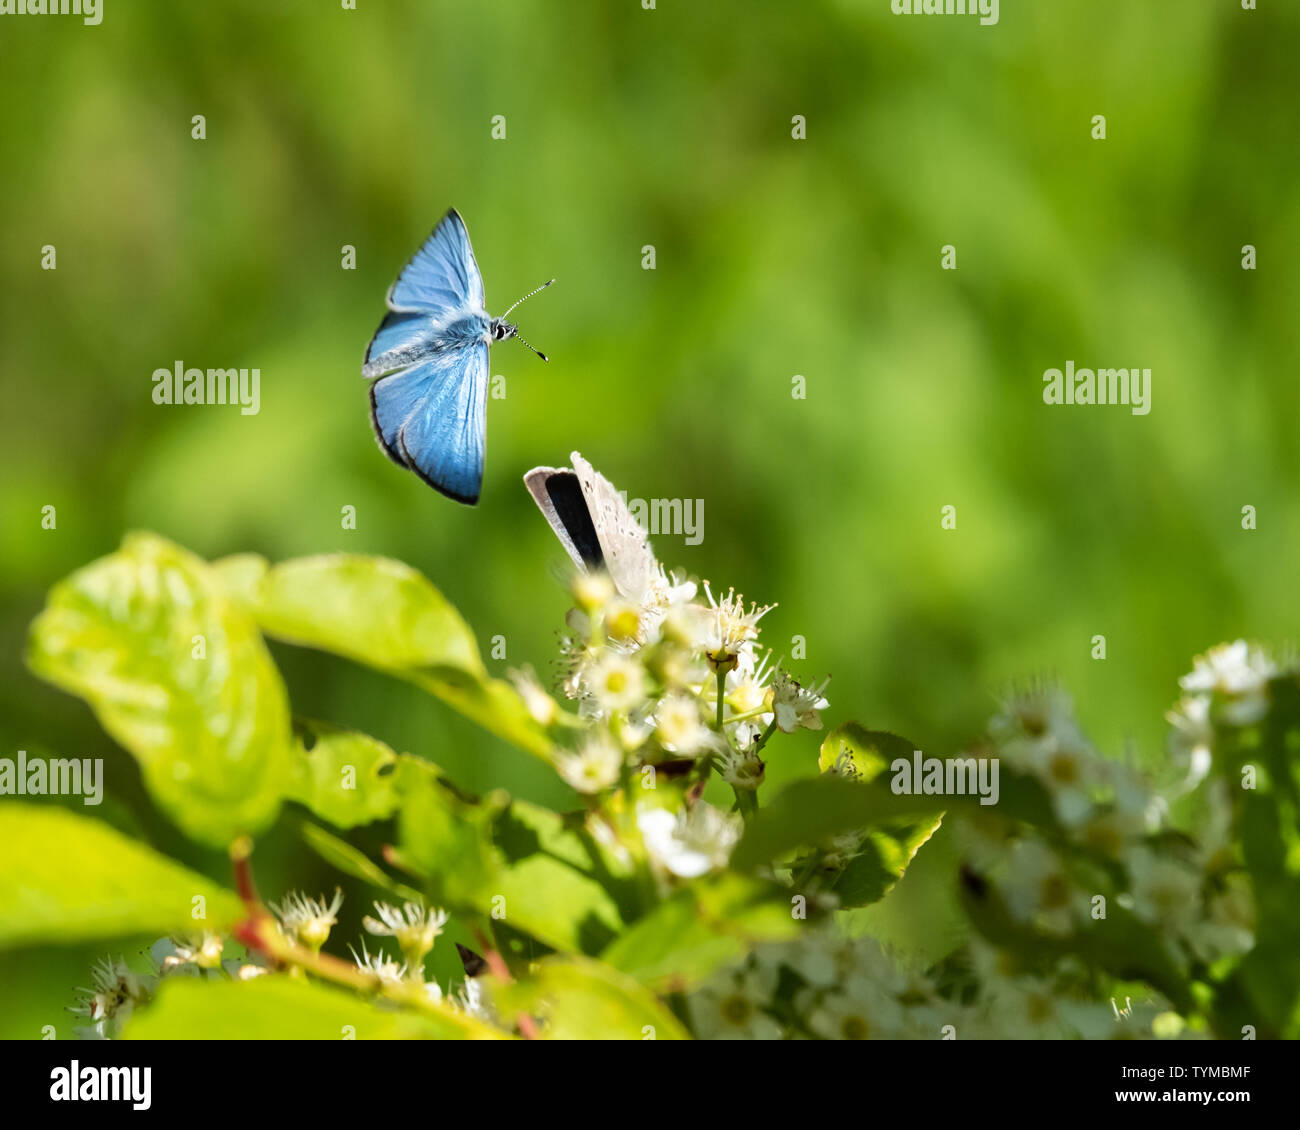 Un iridato blu argenteo moth in volo, con ala completa diffusione, oltre i grappoli di fiori e un altro moth, con copia di grandi dimensioni spazio disponibile. Foto Stock